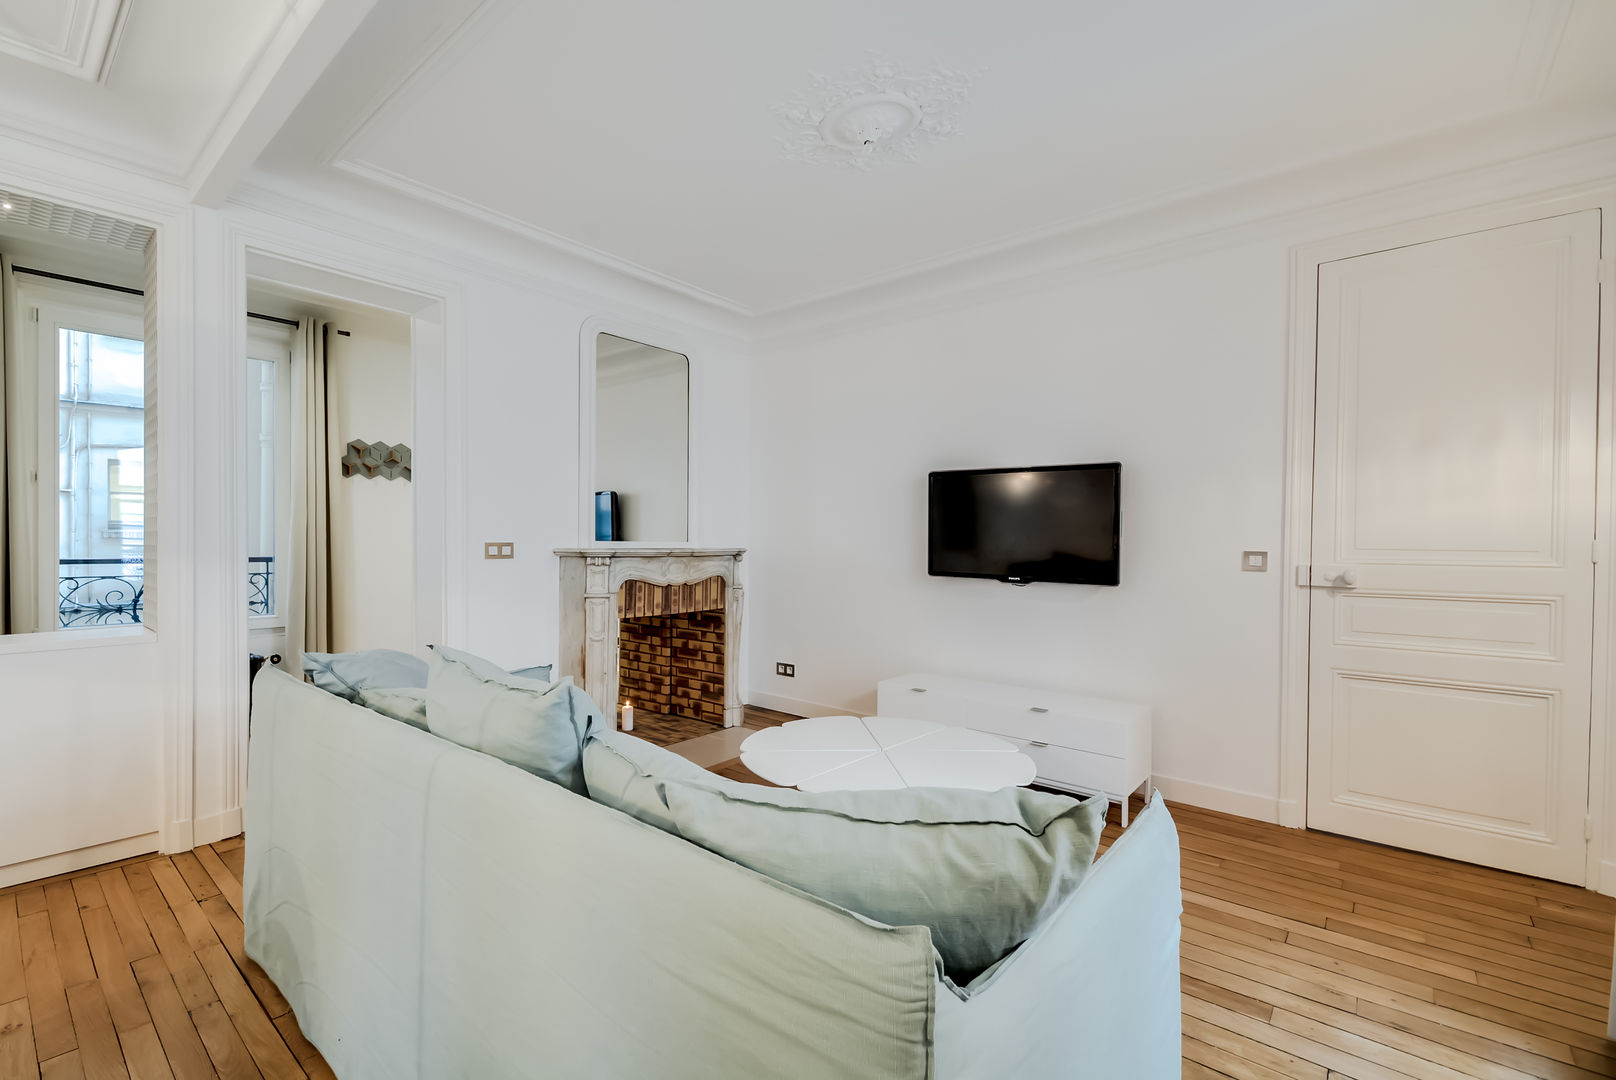 Un Appartement locatif saisonnier au coeur de Paris, ATELIER FB ATELIER FB Modern Oturma Odası